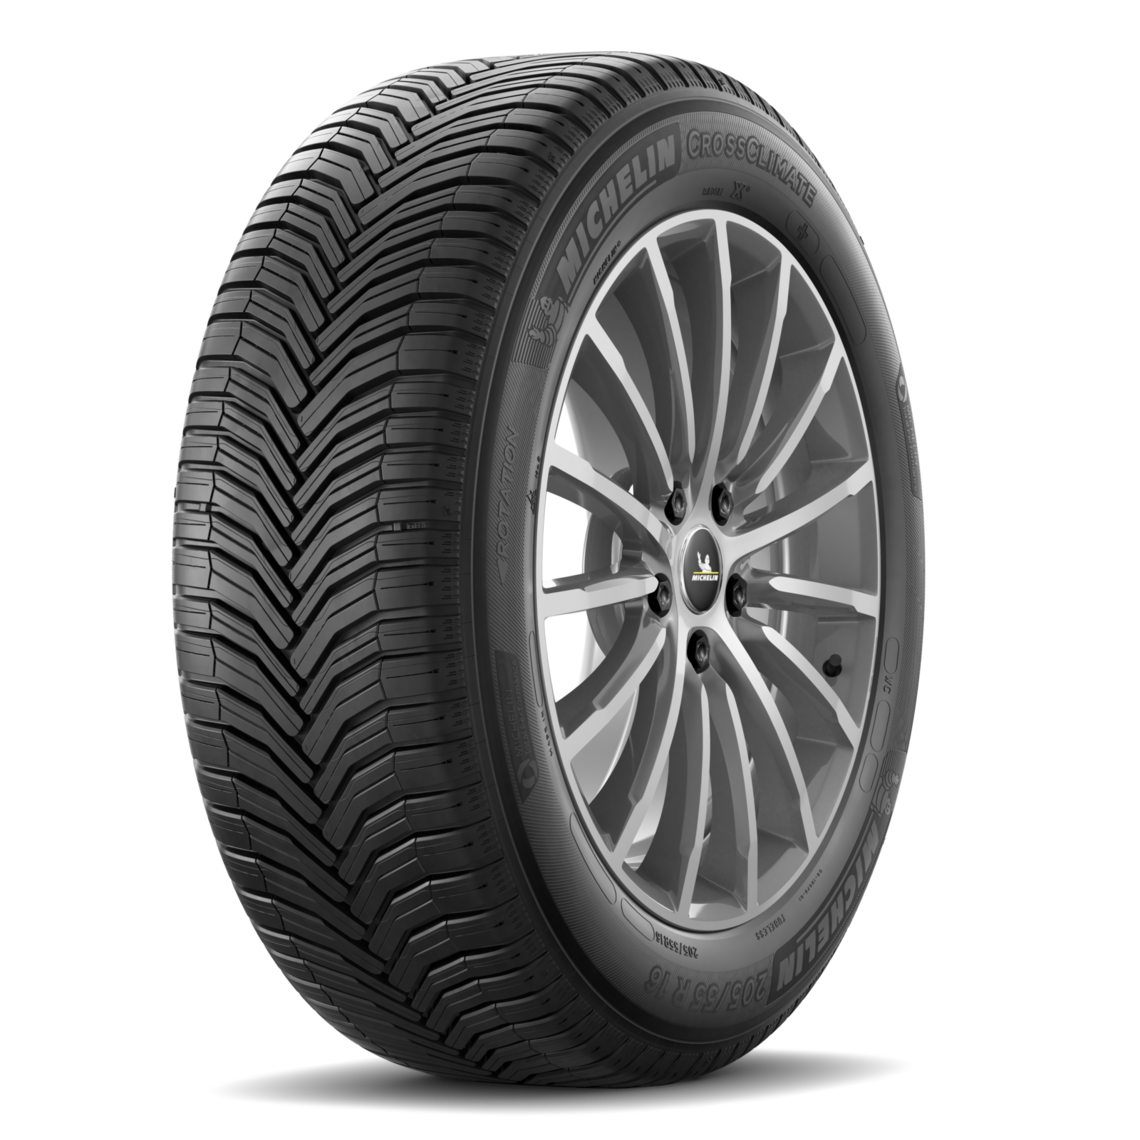 Gomme Nuove Michelin 235/65 R17 104V CrossClimate SUV MO M+S pneumatici nuovi All Season